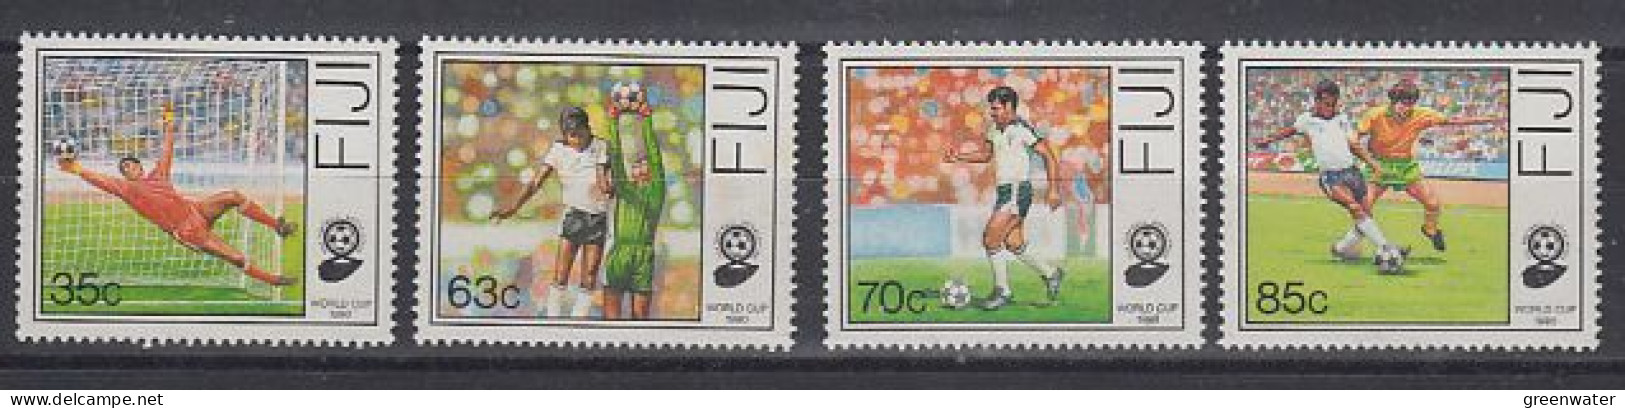 Fidji  World Championship Football Italy 1990 4v   ** Mnh   (59829) - 1990 – Italien